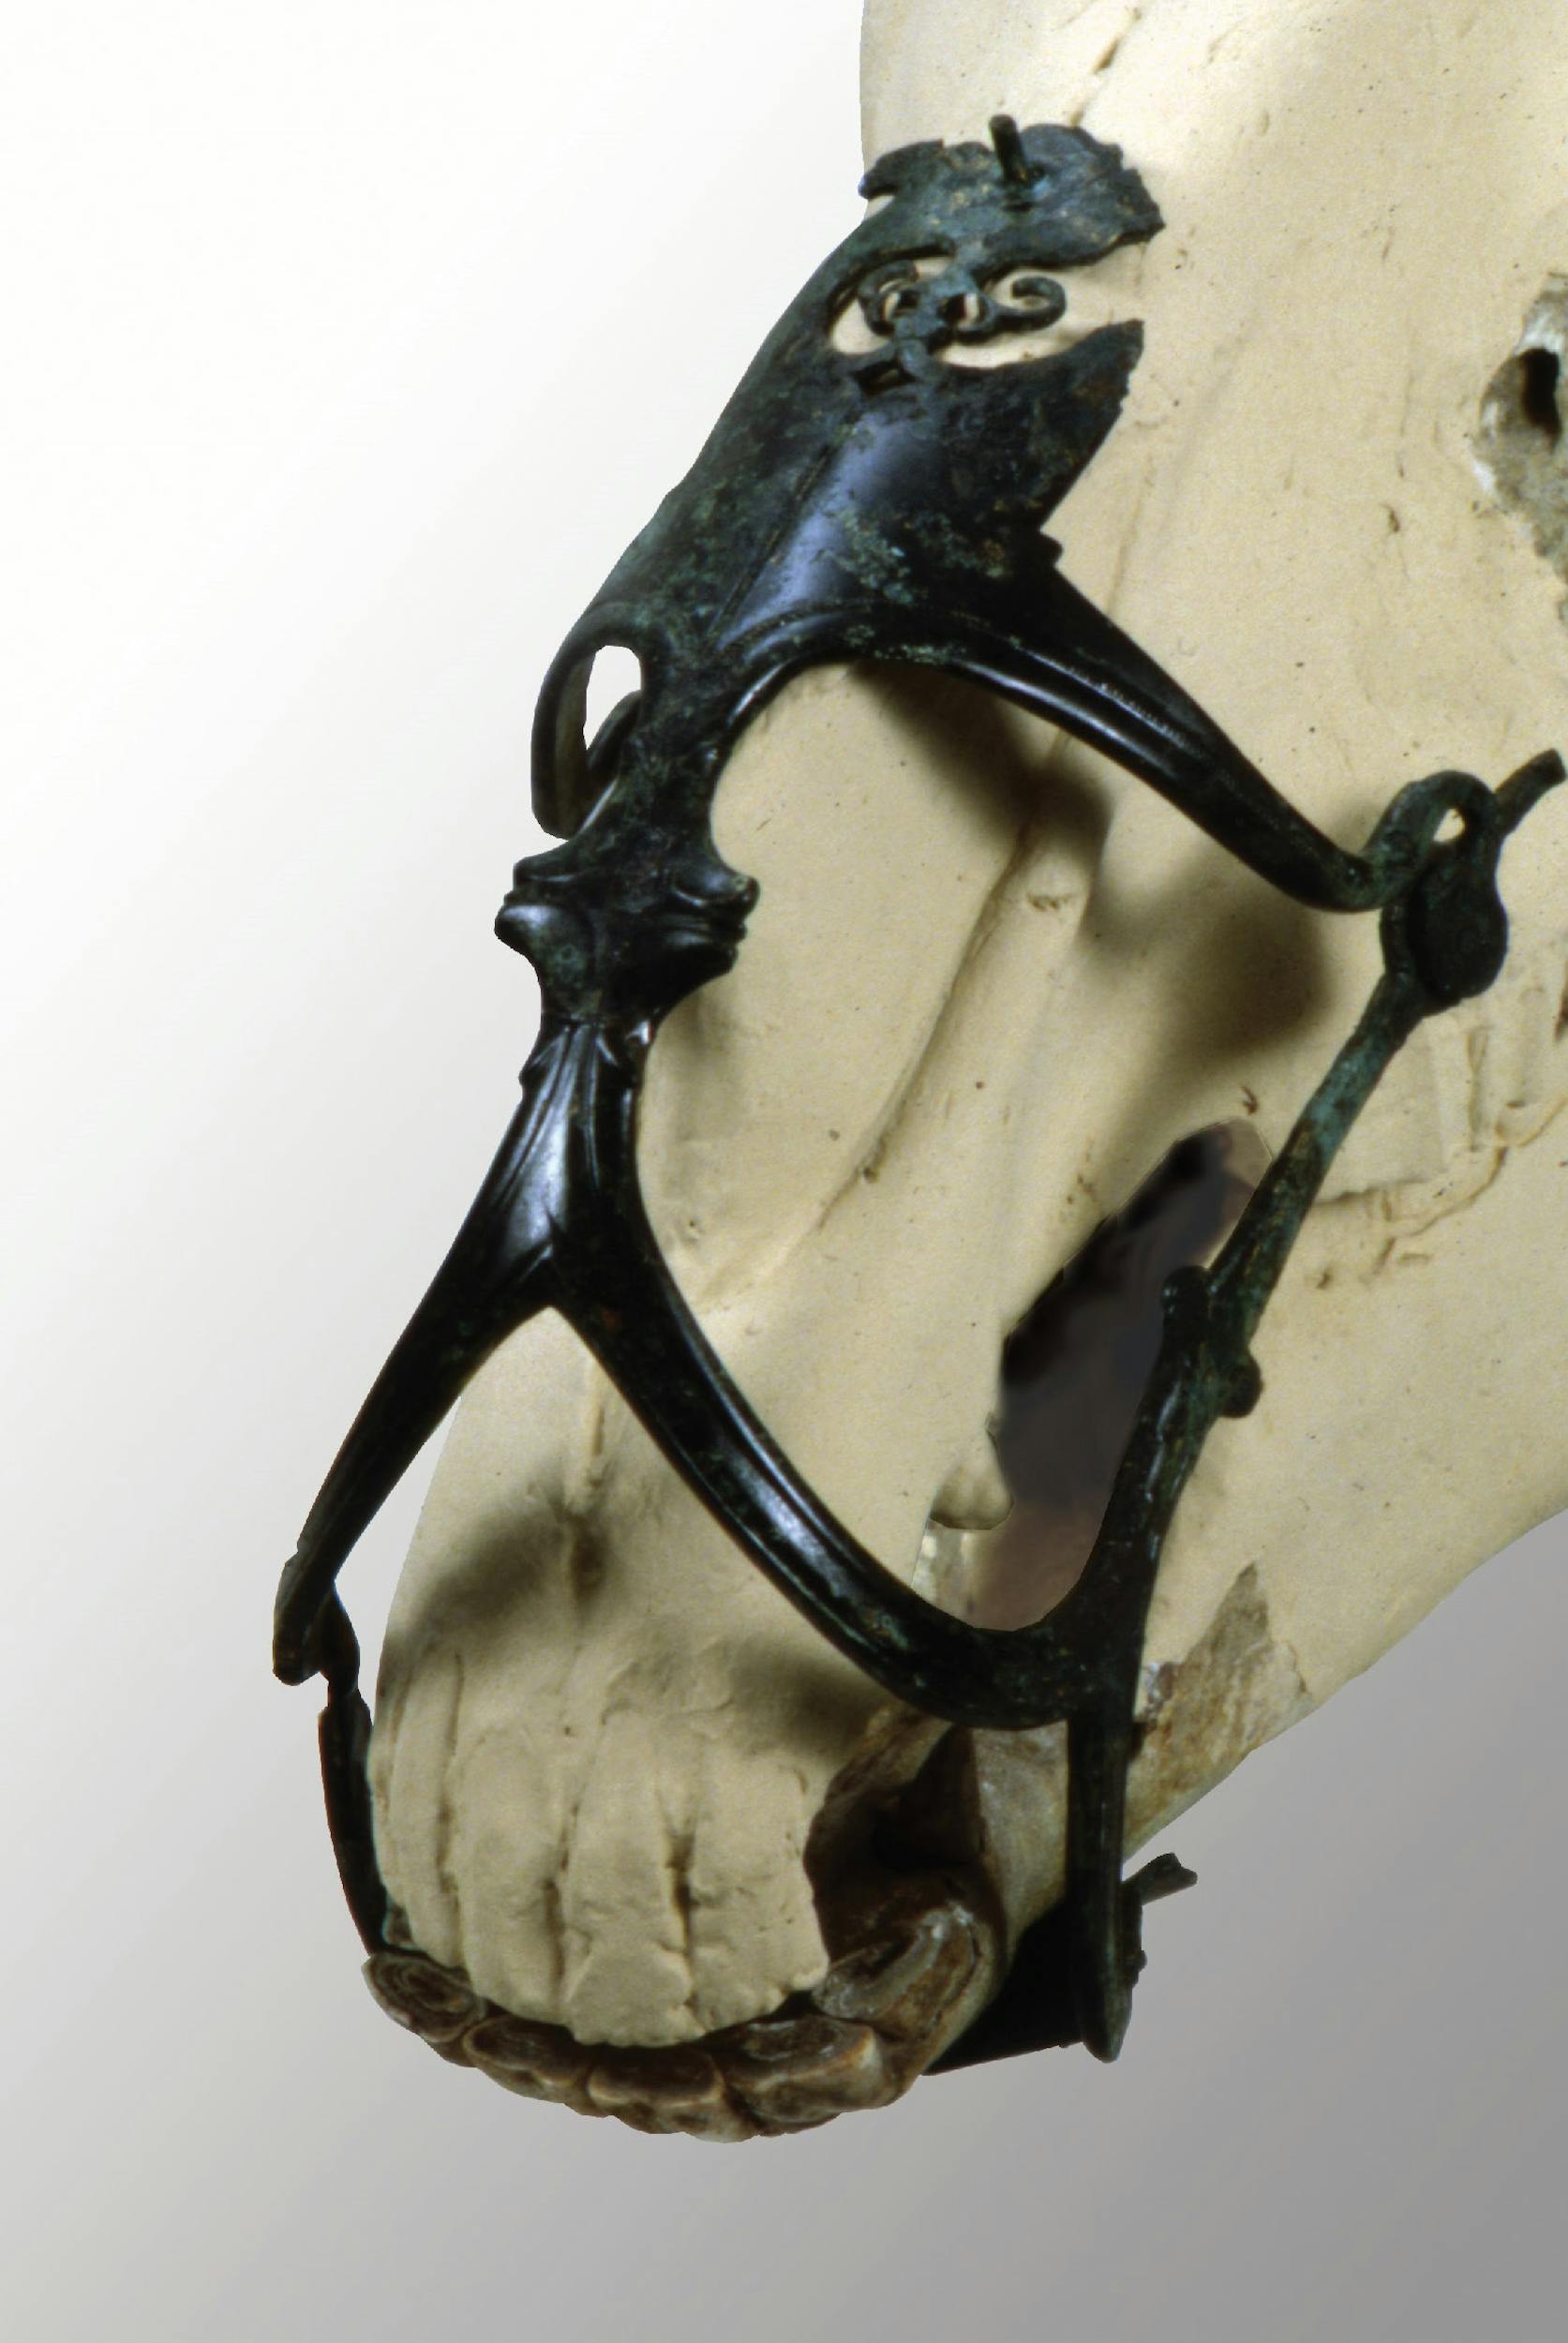 Museruola per cavallo, epoca ellenistica (IV secolo a.C) Bronzo Este, Museo Nazionale Atestino